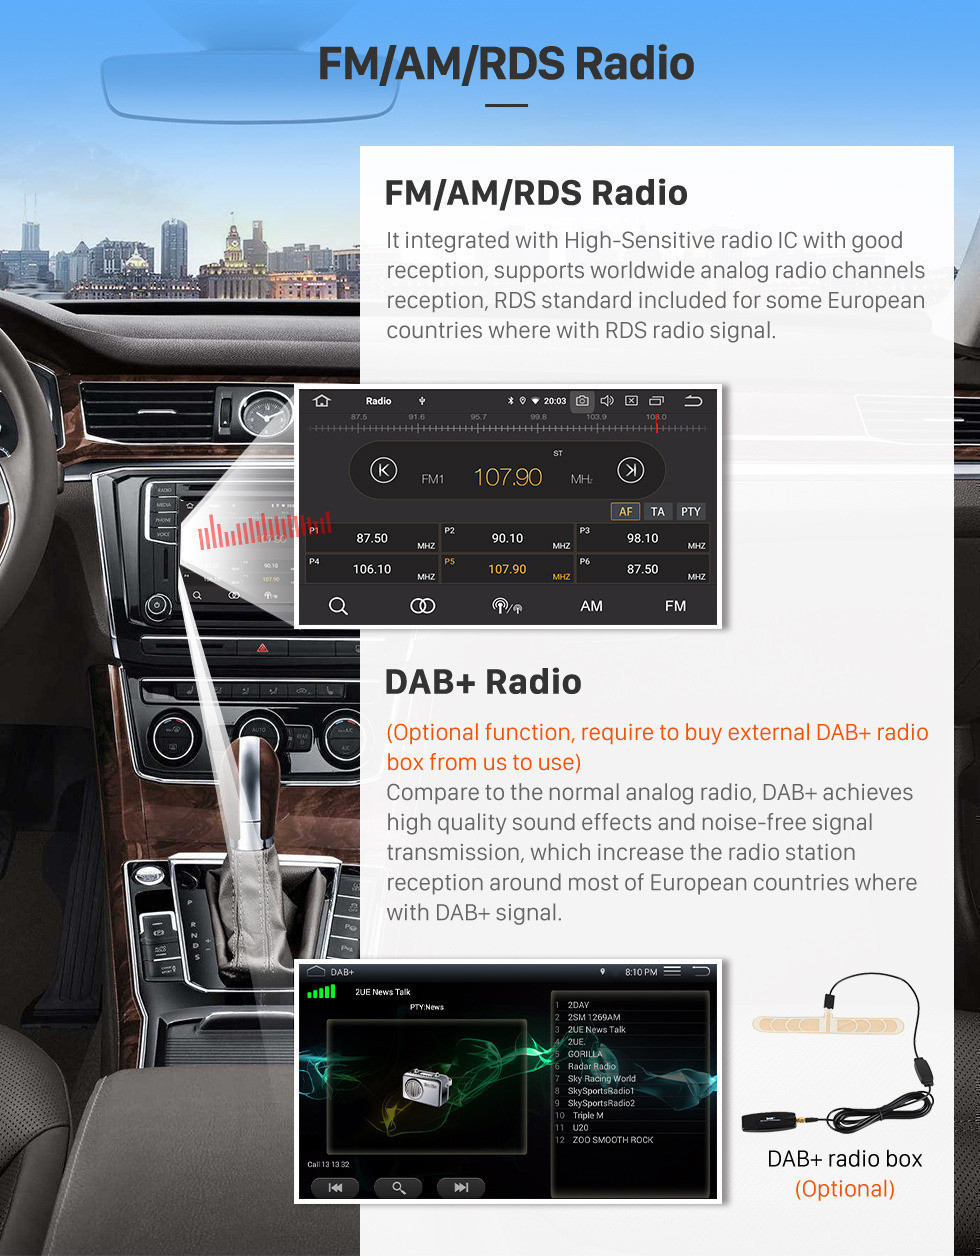 Seicane 9 Zoll Android 12.0 HD 1024 * 600 Touchscreen für 2000-2015 VW Volkswagen Crafter Radio GPS Head Unit mit 3G WiFi DVD Player Bluetooth Musik AUX Rückfahrkamera OBD2 Mirror Link